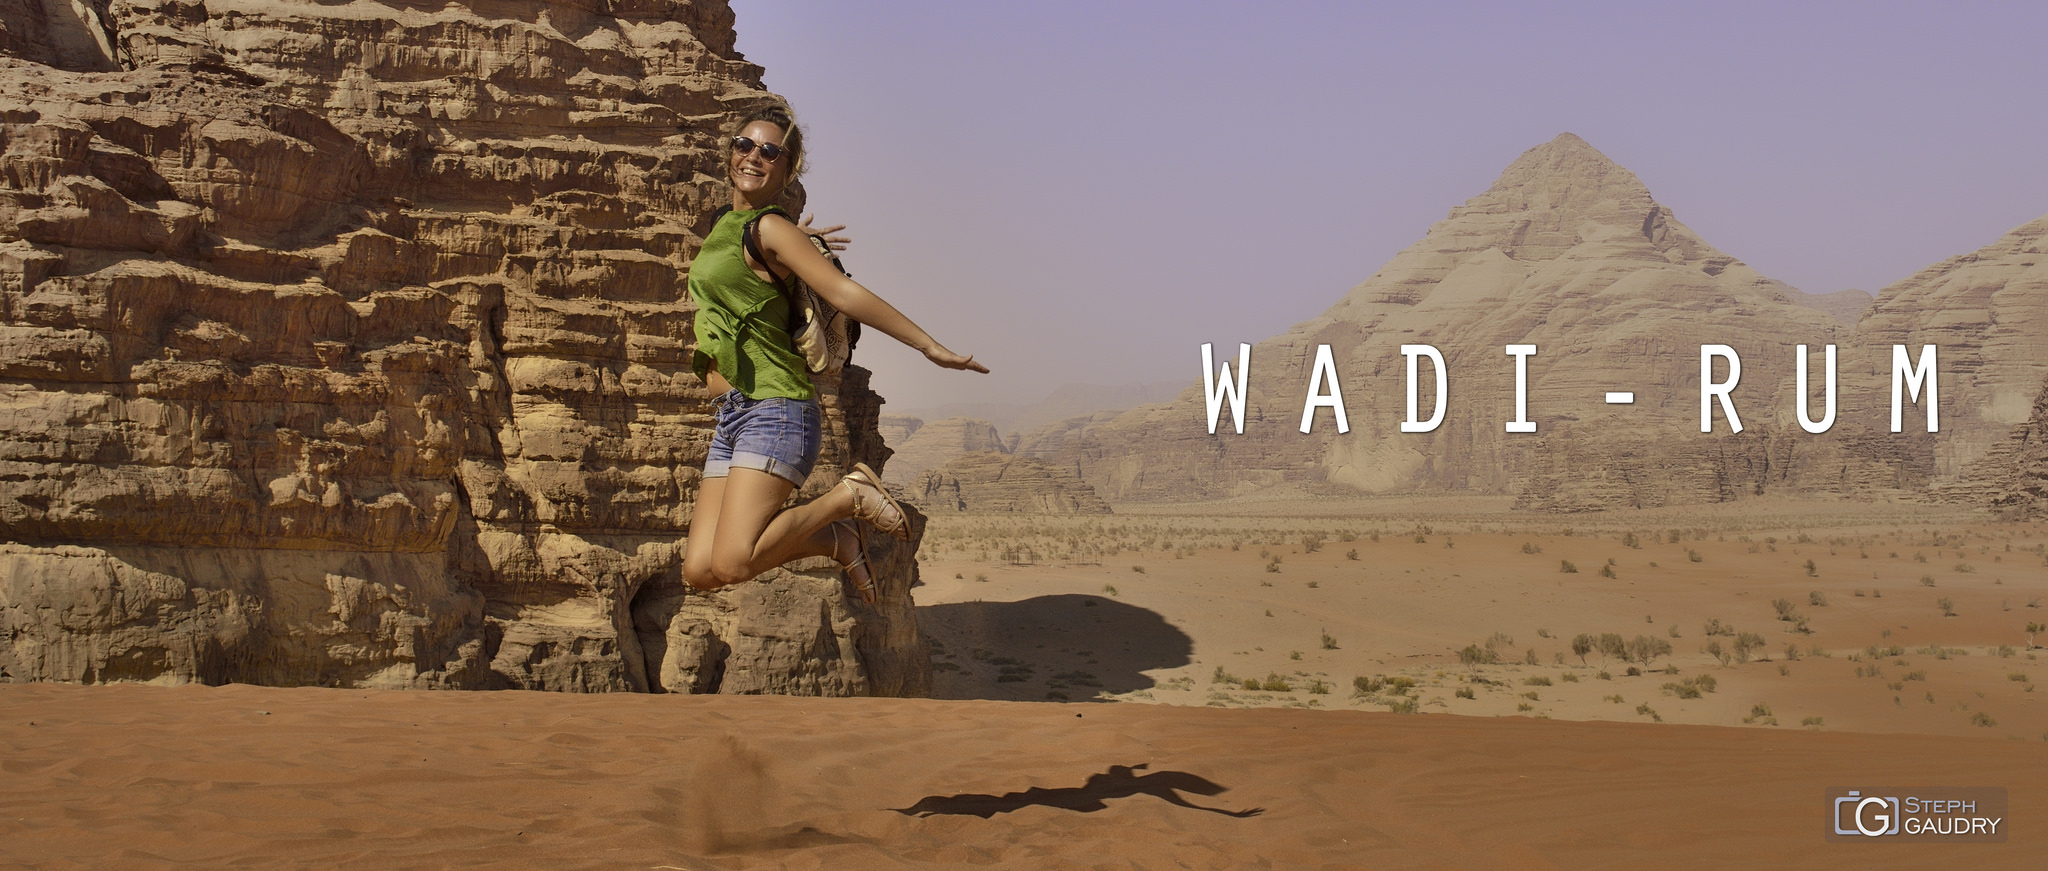 Wadi-Rum - Lucy in the sky with diamonds [Klik om de diavoorstelling te starten]